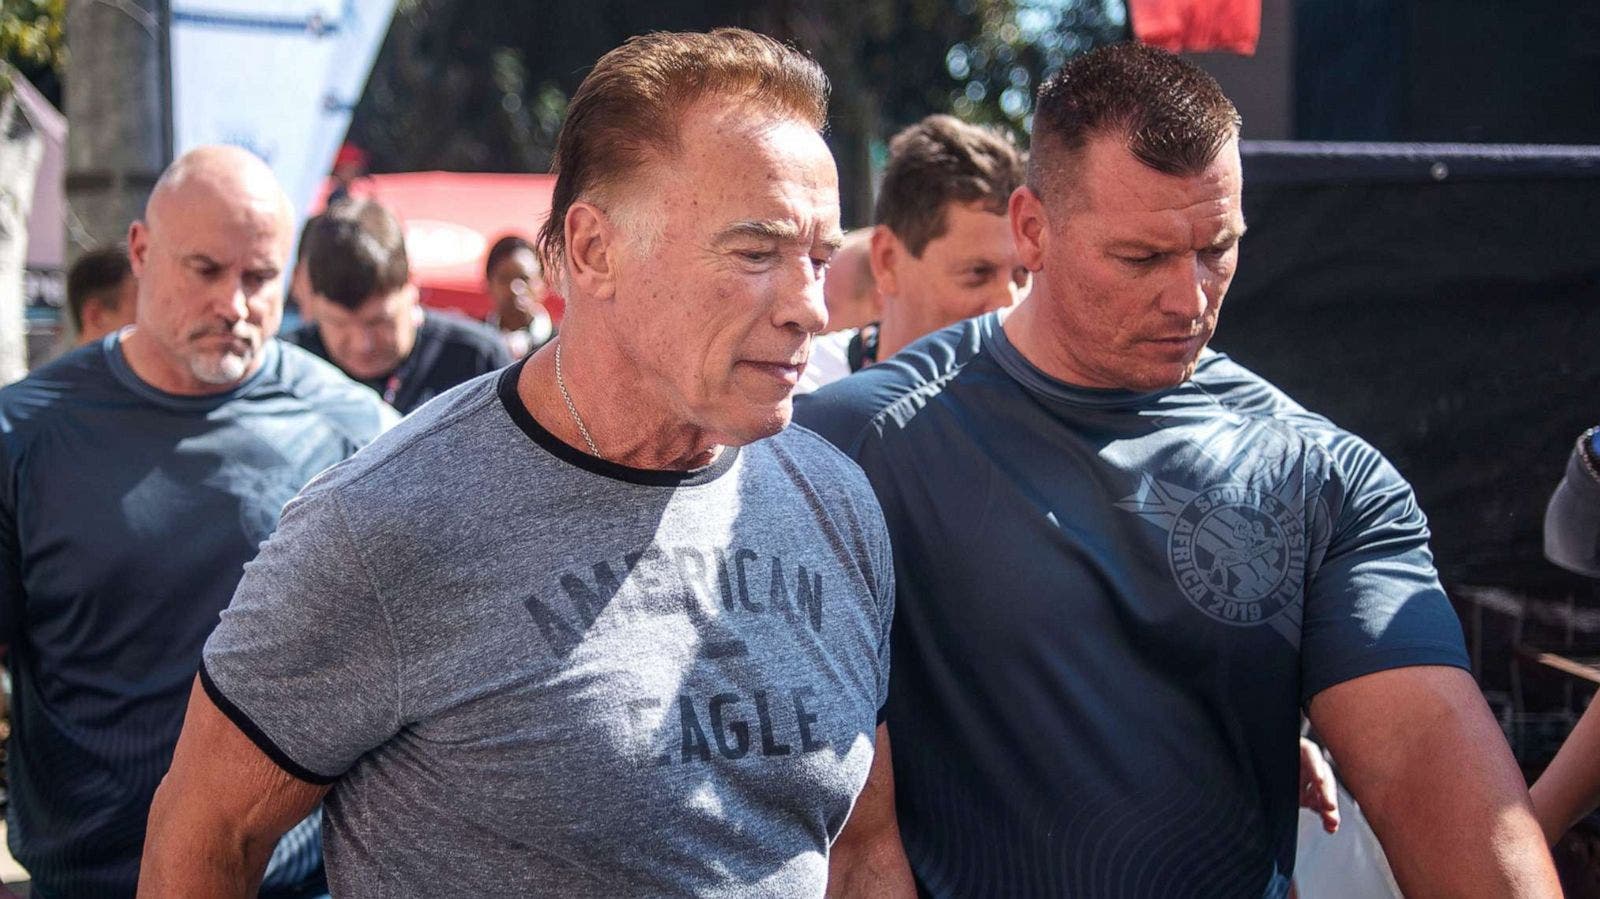 El pet d'Arnold Schwarzenegger que porta cua, l'actriu de Harry Potter no l'hi perdona